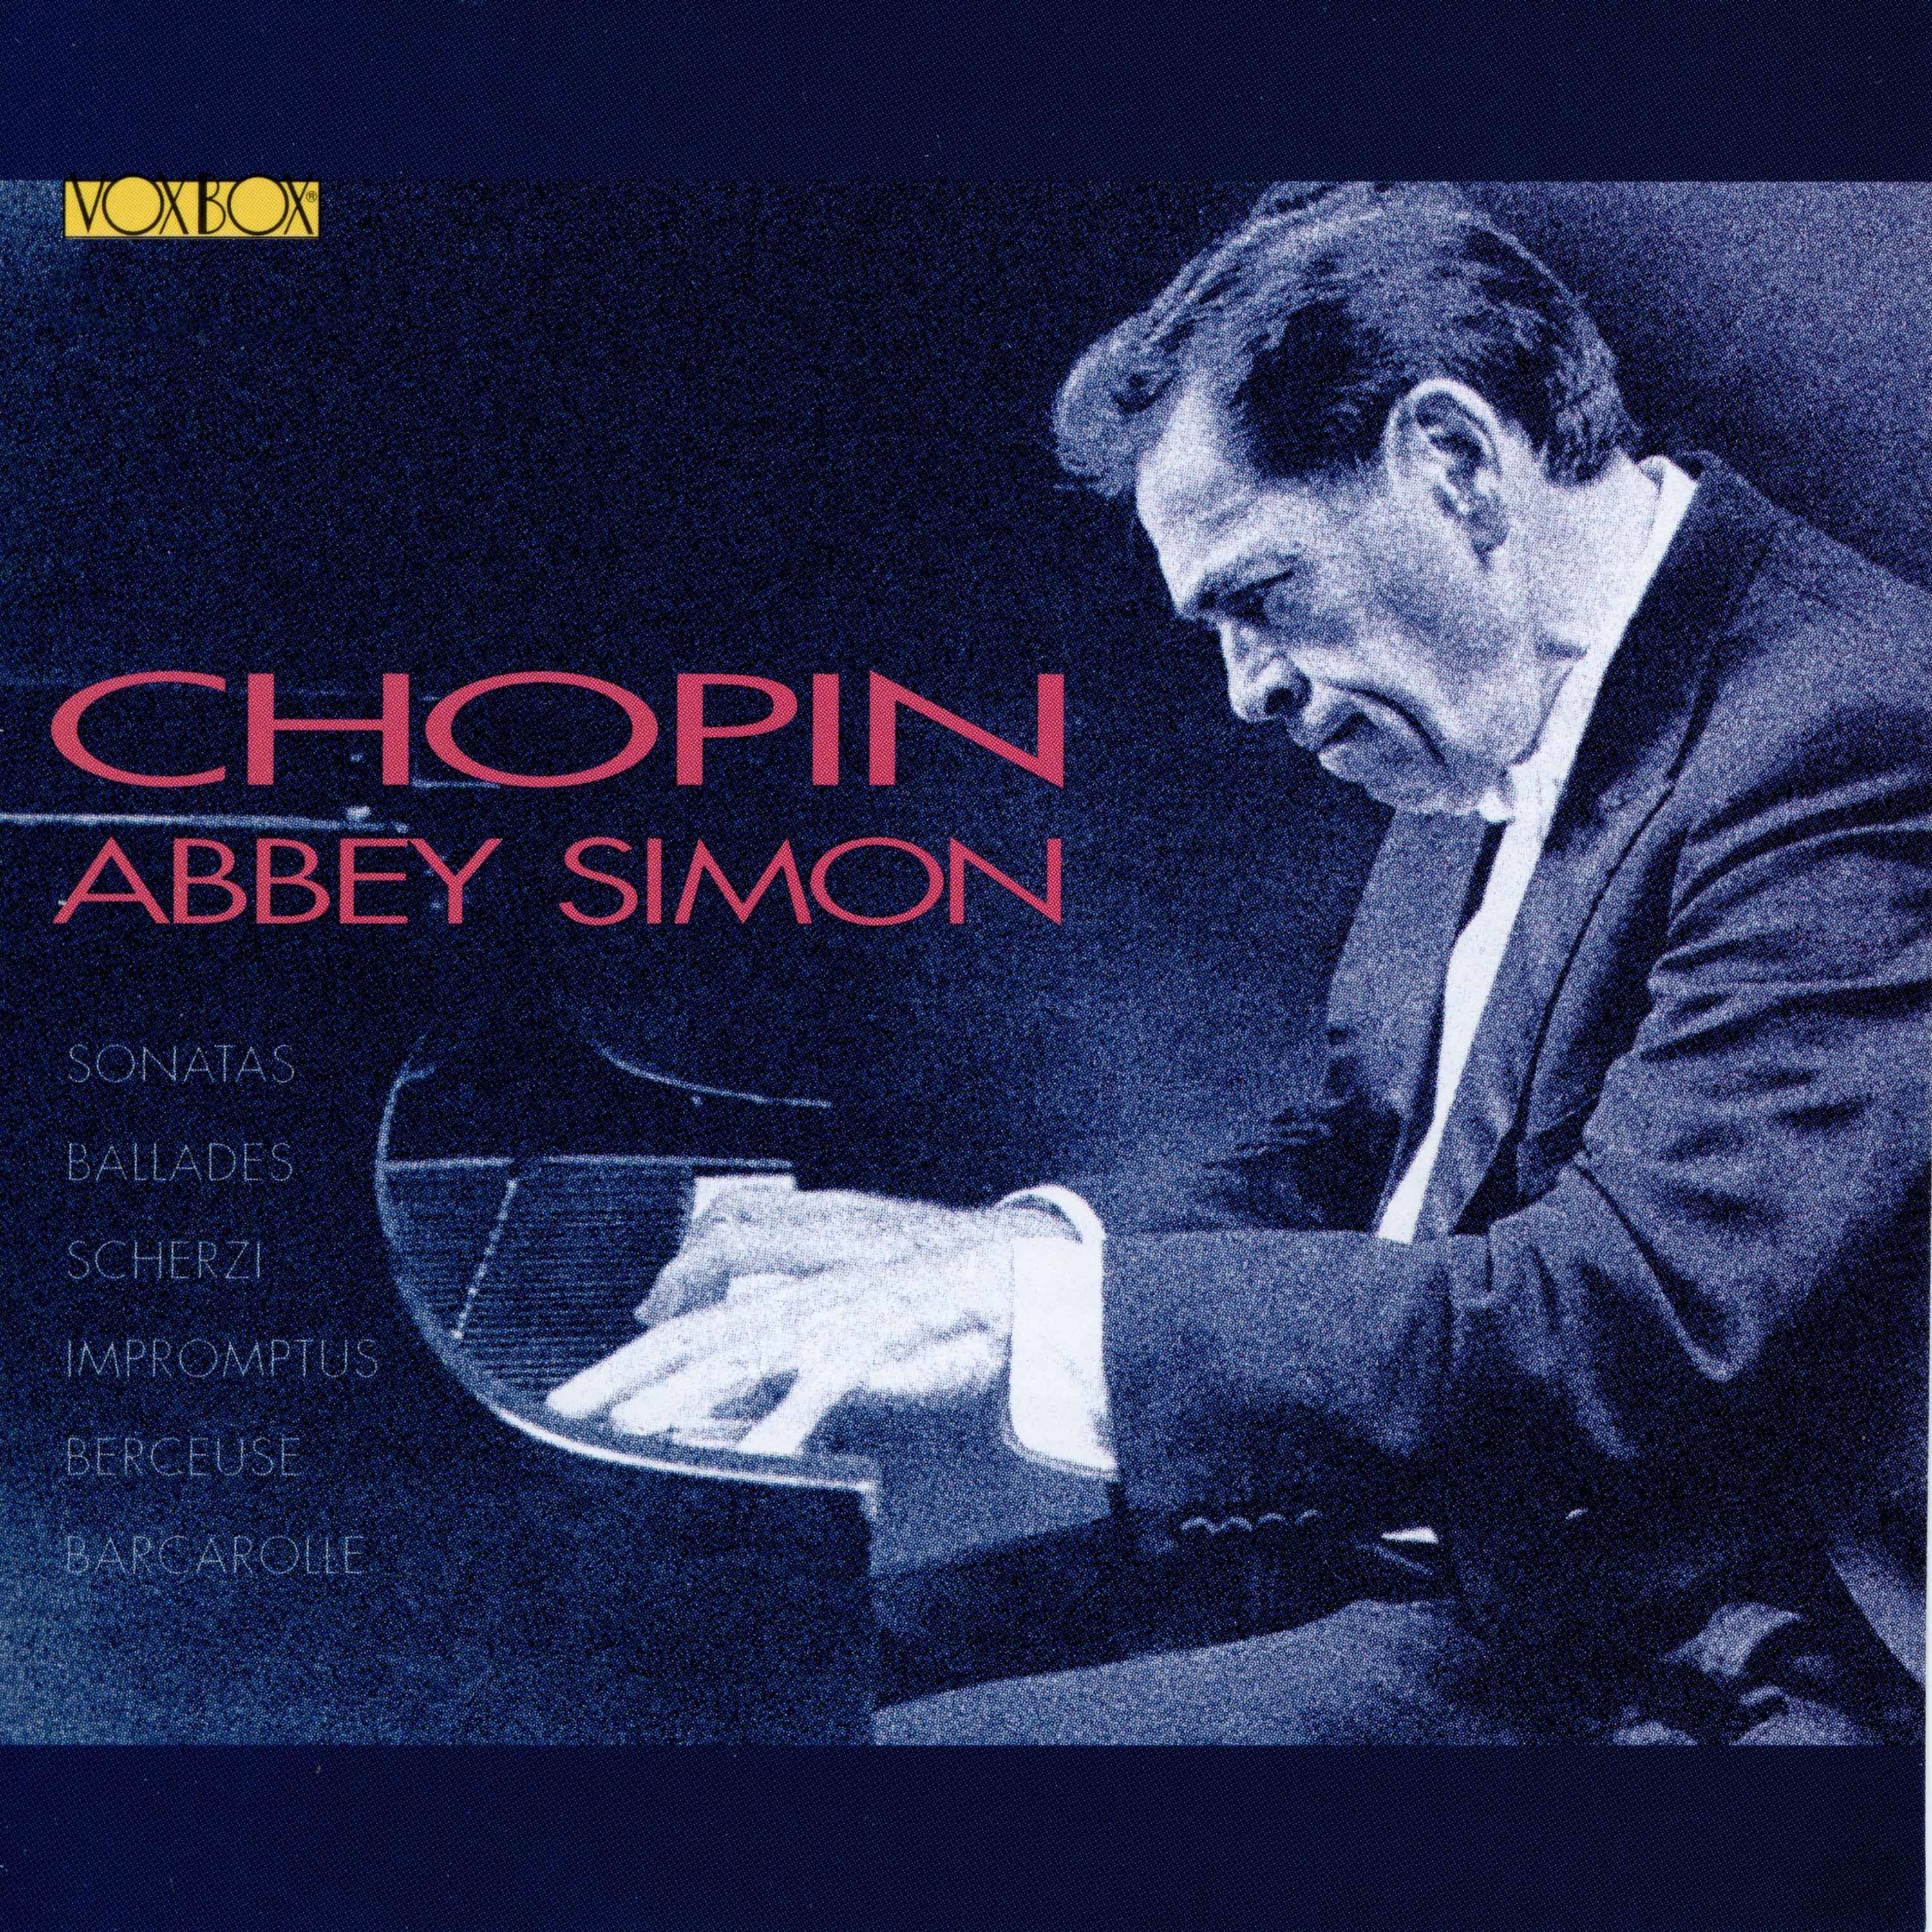 Abbey Simon - Chopin Sonatas Scherzos Ballades Impromptus Berceuse Barcarolle cd01